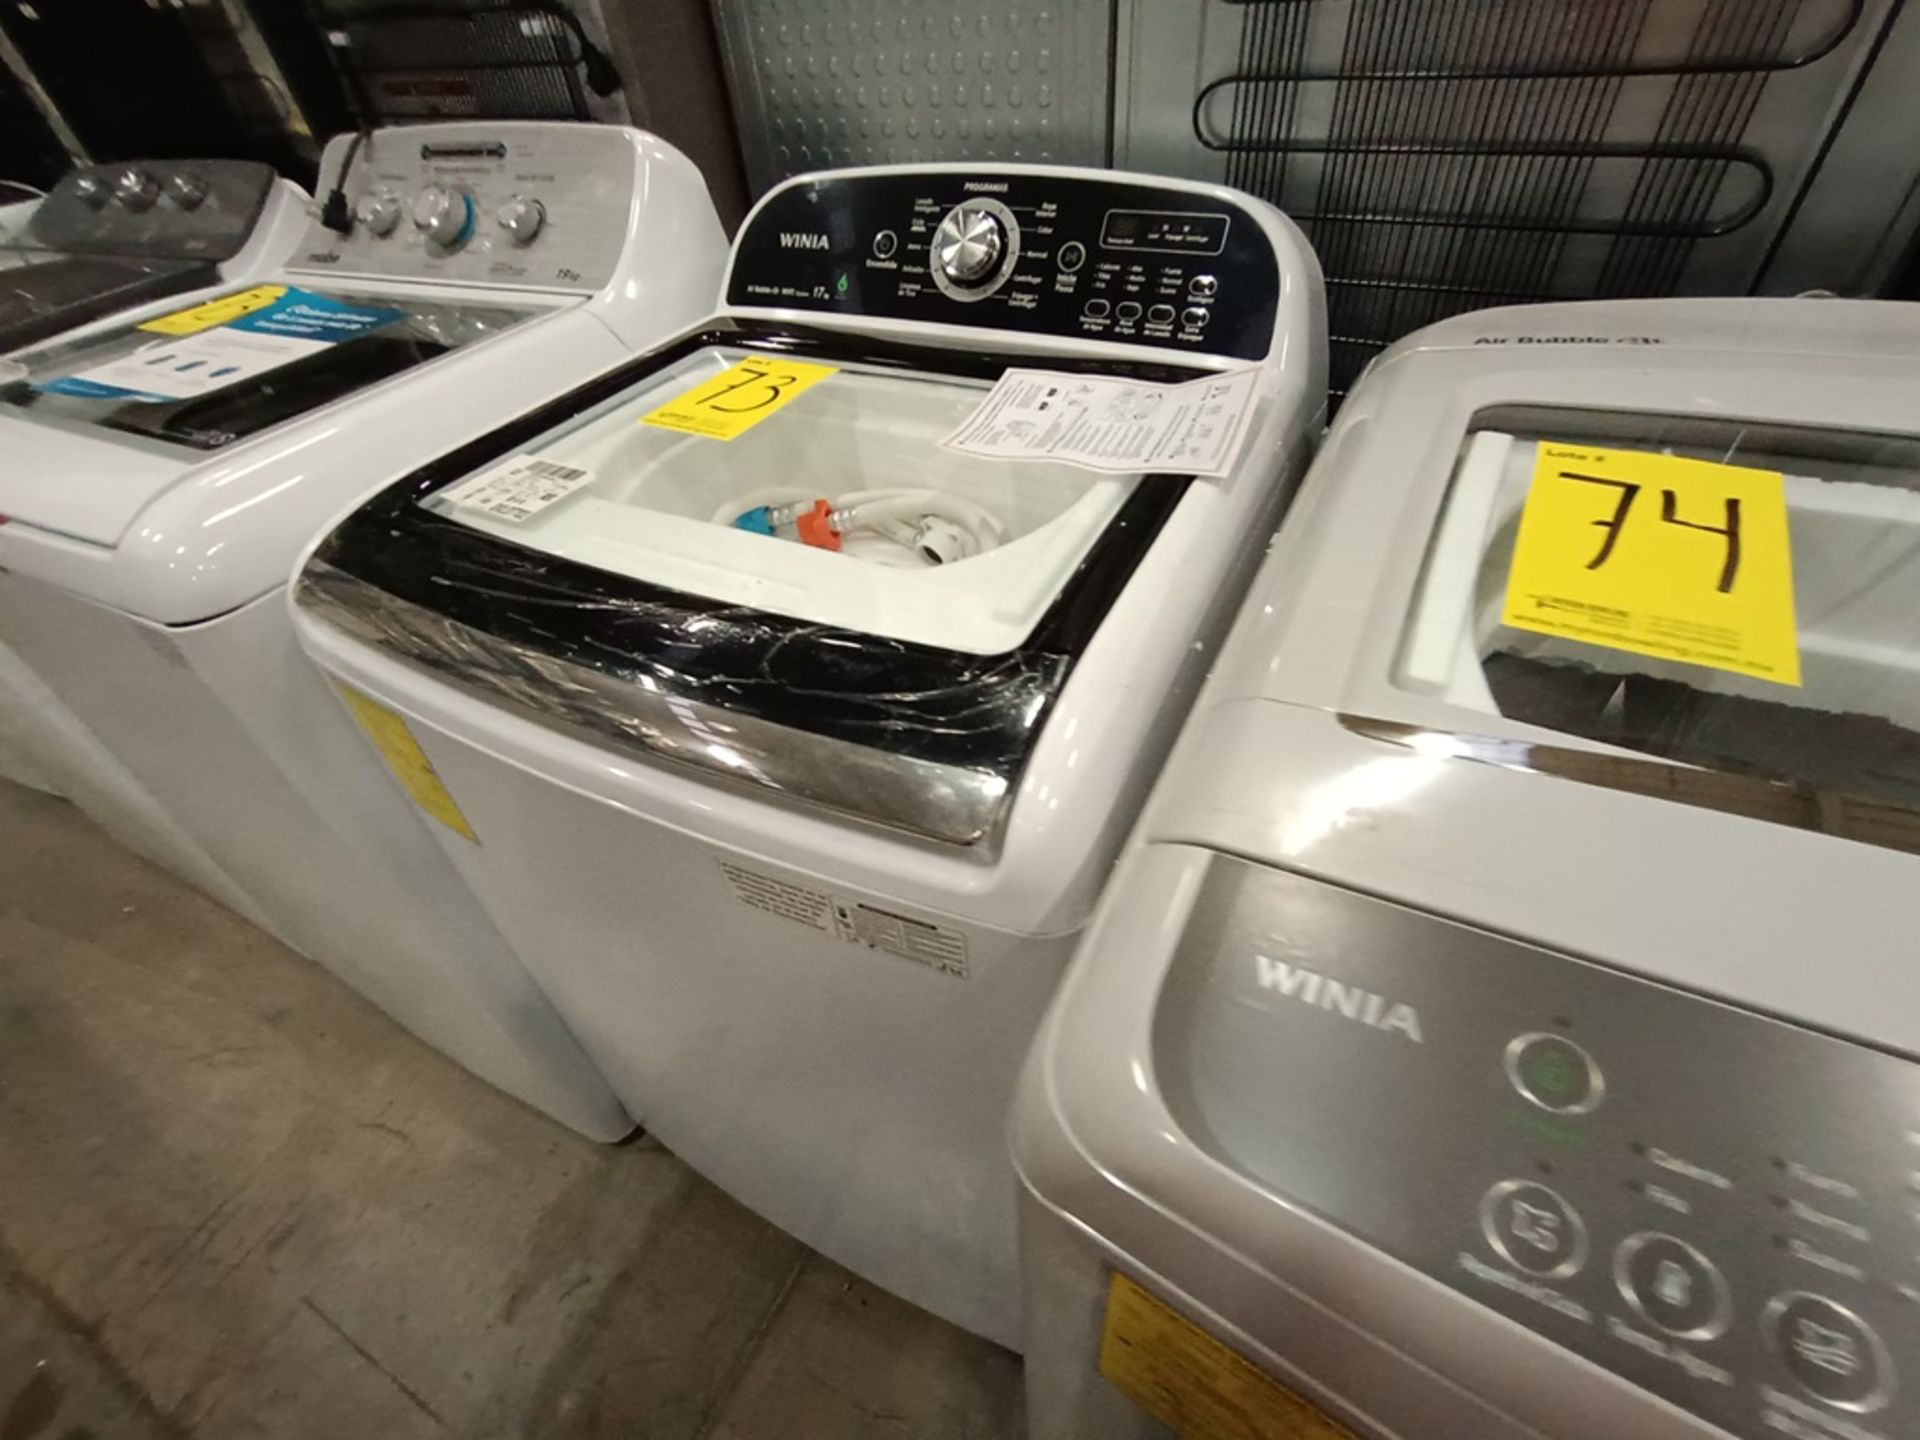 Lote de 2 Lavadoras contiene: 1 lavadora de 19 kg Marca MABE, Modelo LMA79113VBAB03, Serie S73629, - Image 12 of 18